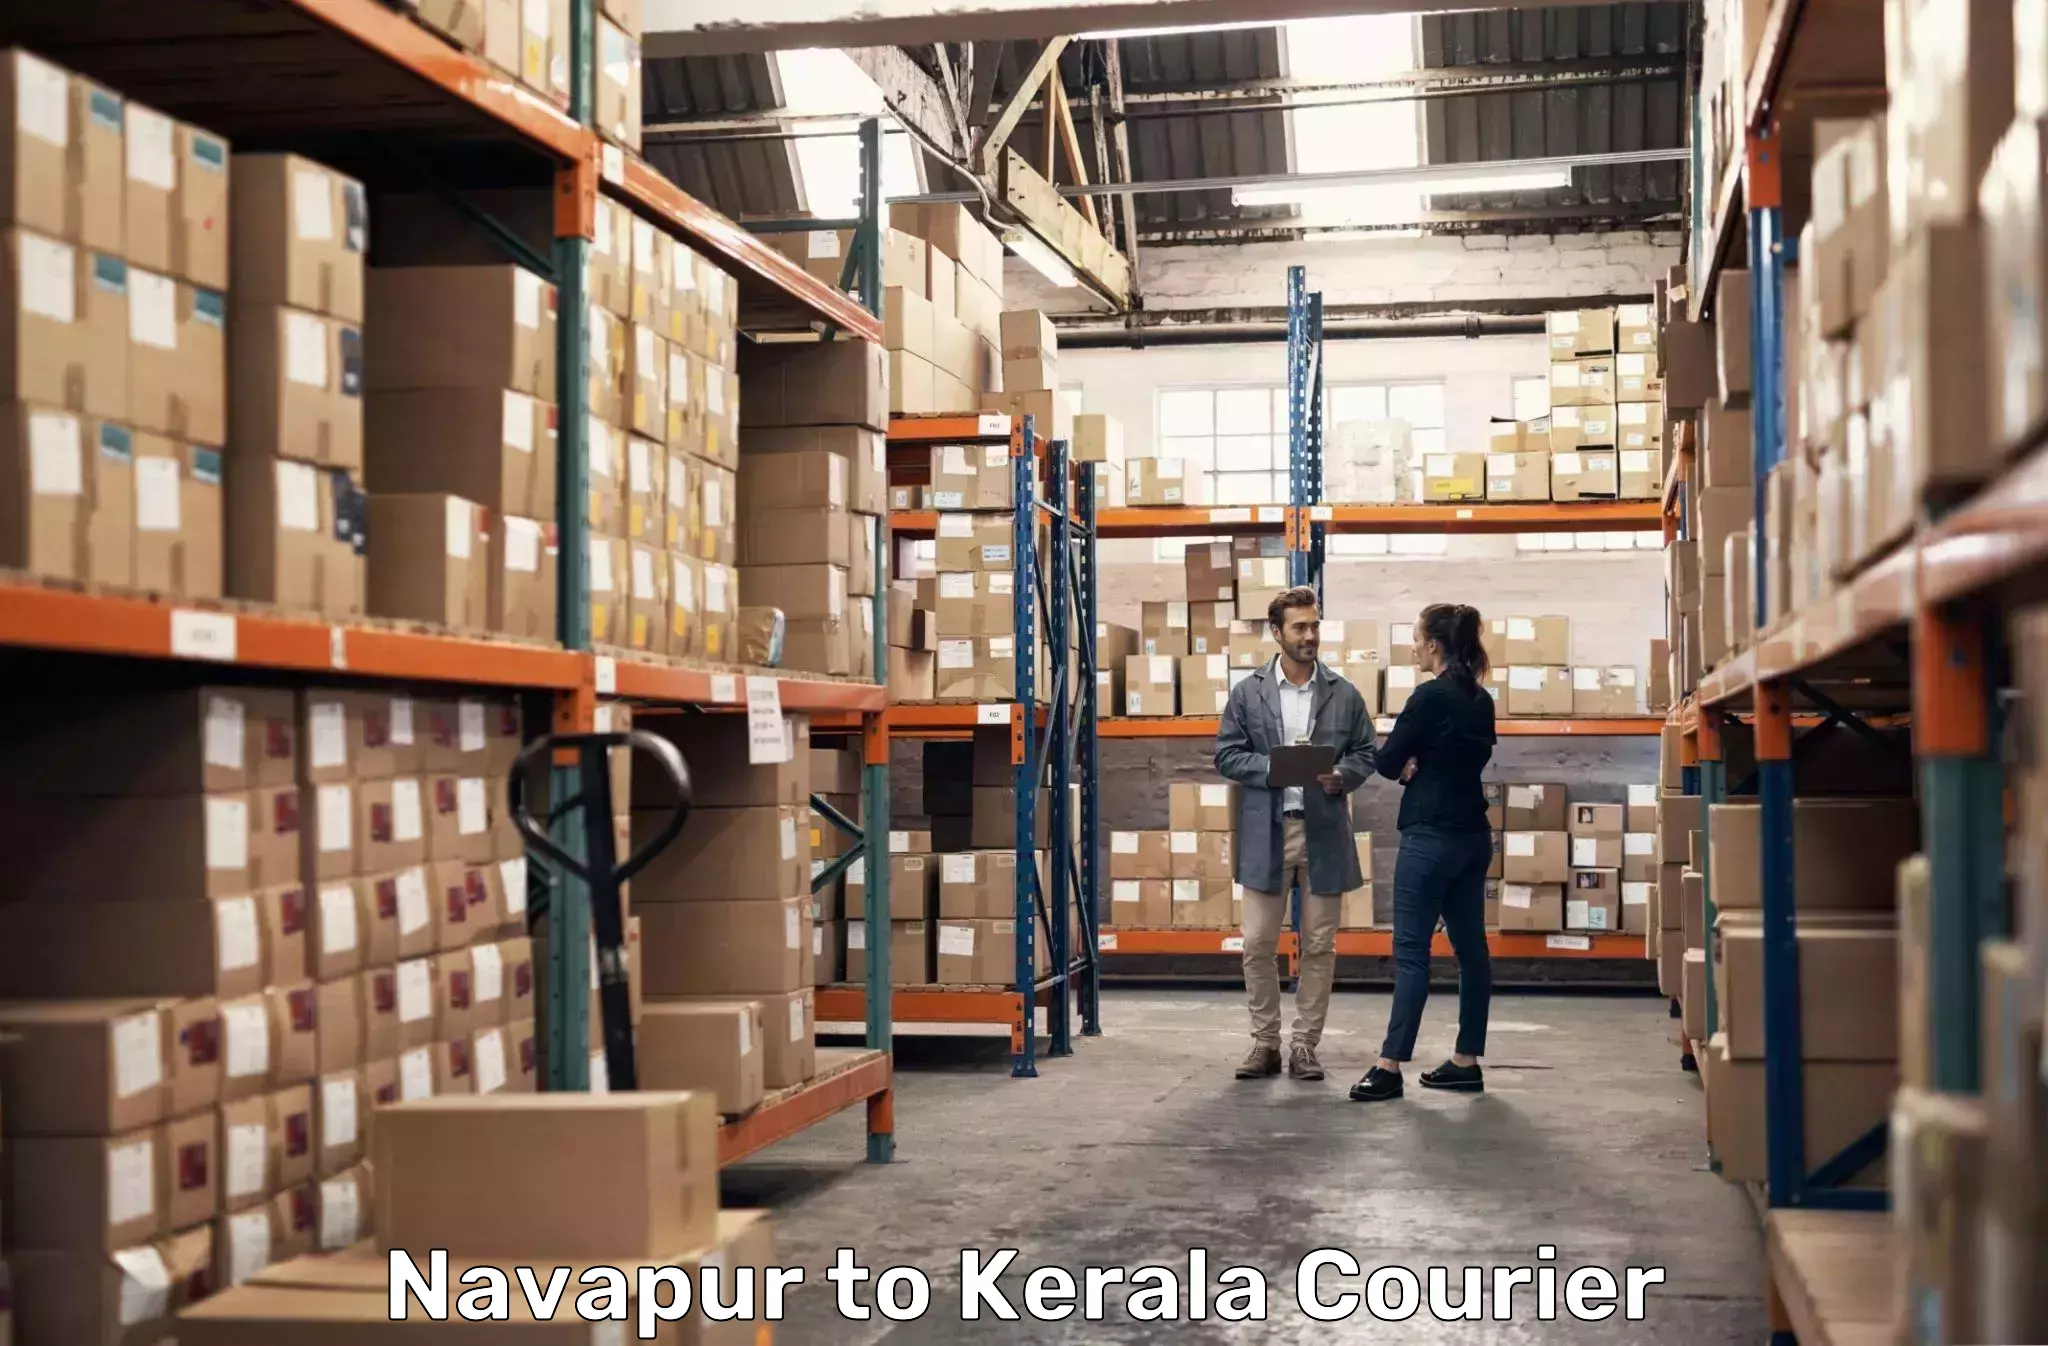 Custom courier packaging Navapur to Kerala